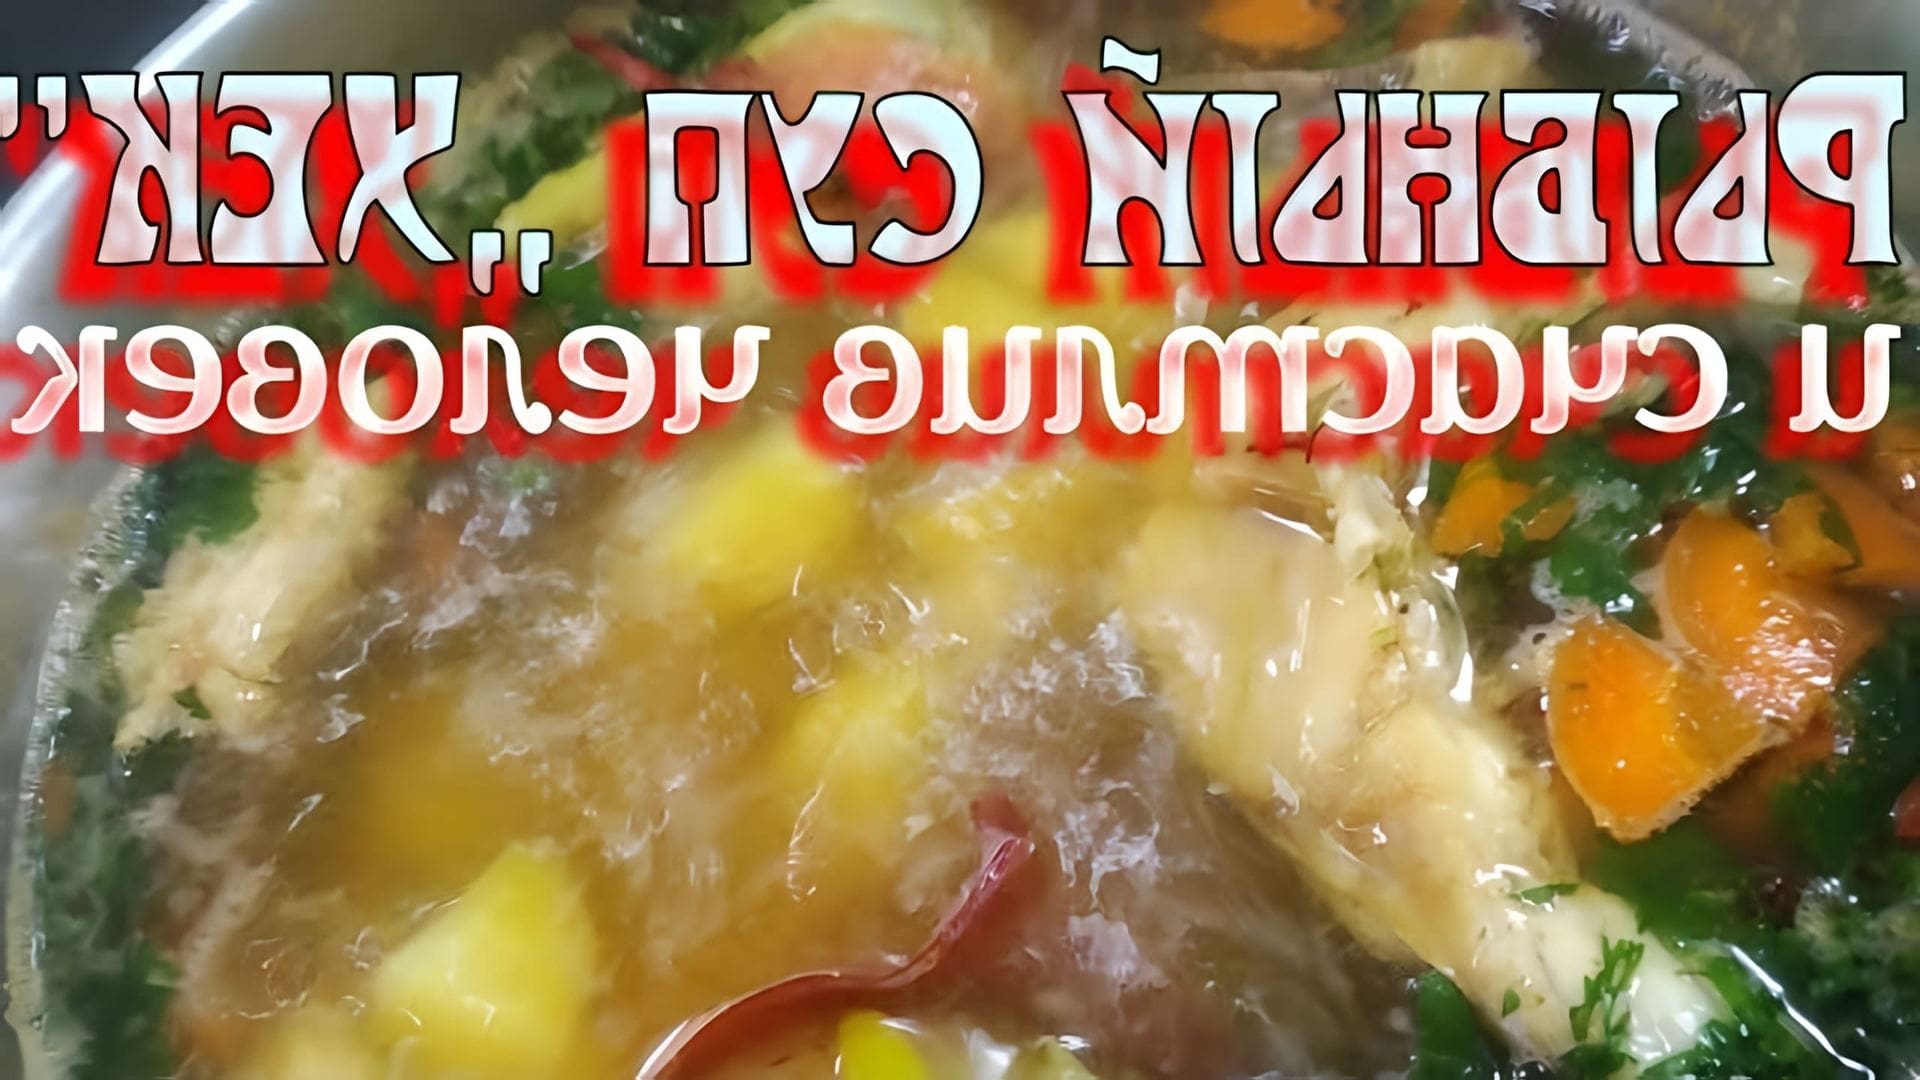 В этом видео демонстрируется процесс приготовления рыбного супа из хека